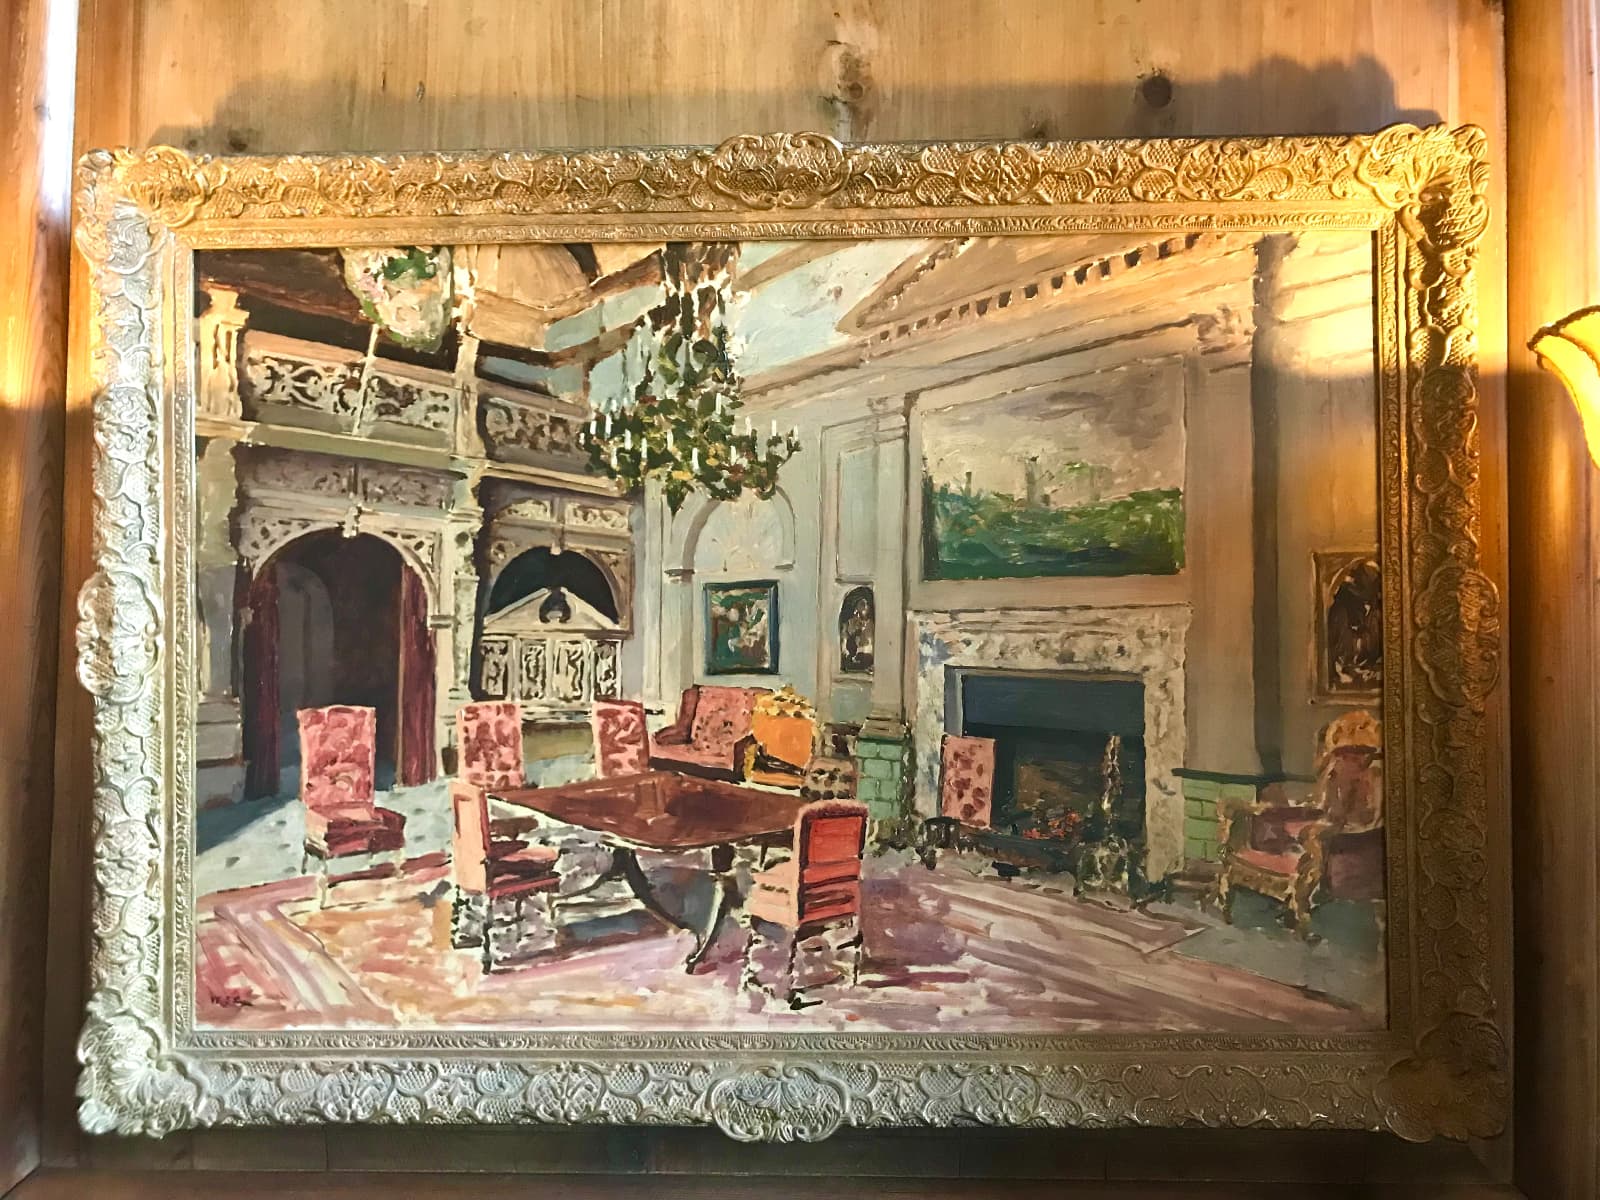 ウィンストン・チャーチル元首相によって描かれたバンケティング・ホールの絵　ネブワース・ハウス